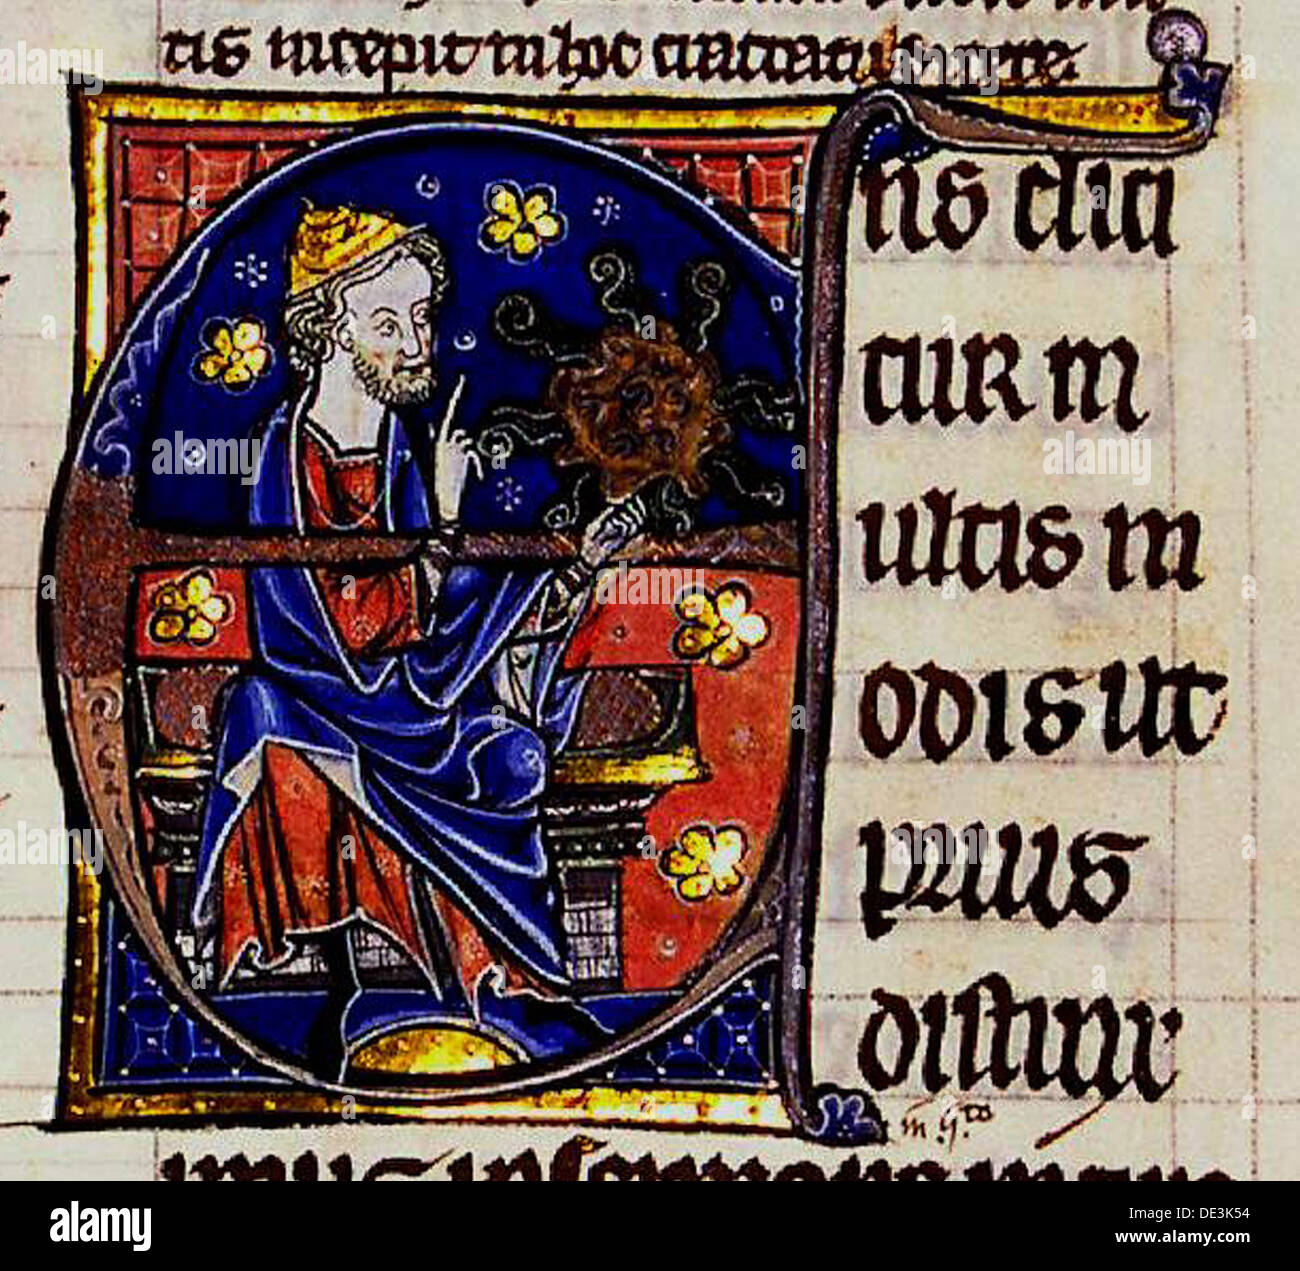 Aristote. À partir de : Commentarium magnum Averrois in Aristotelis De Anima libros, 13e siècle. Artiste : Anonyme Banque D'Images